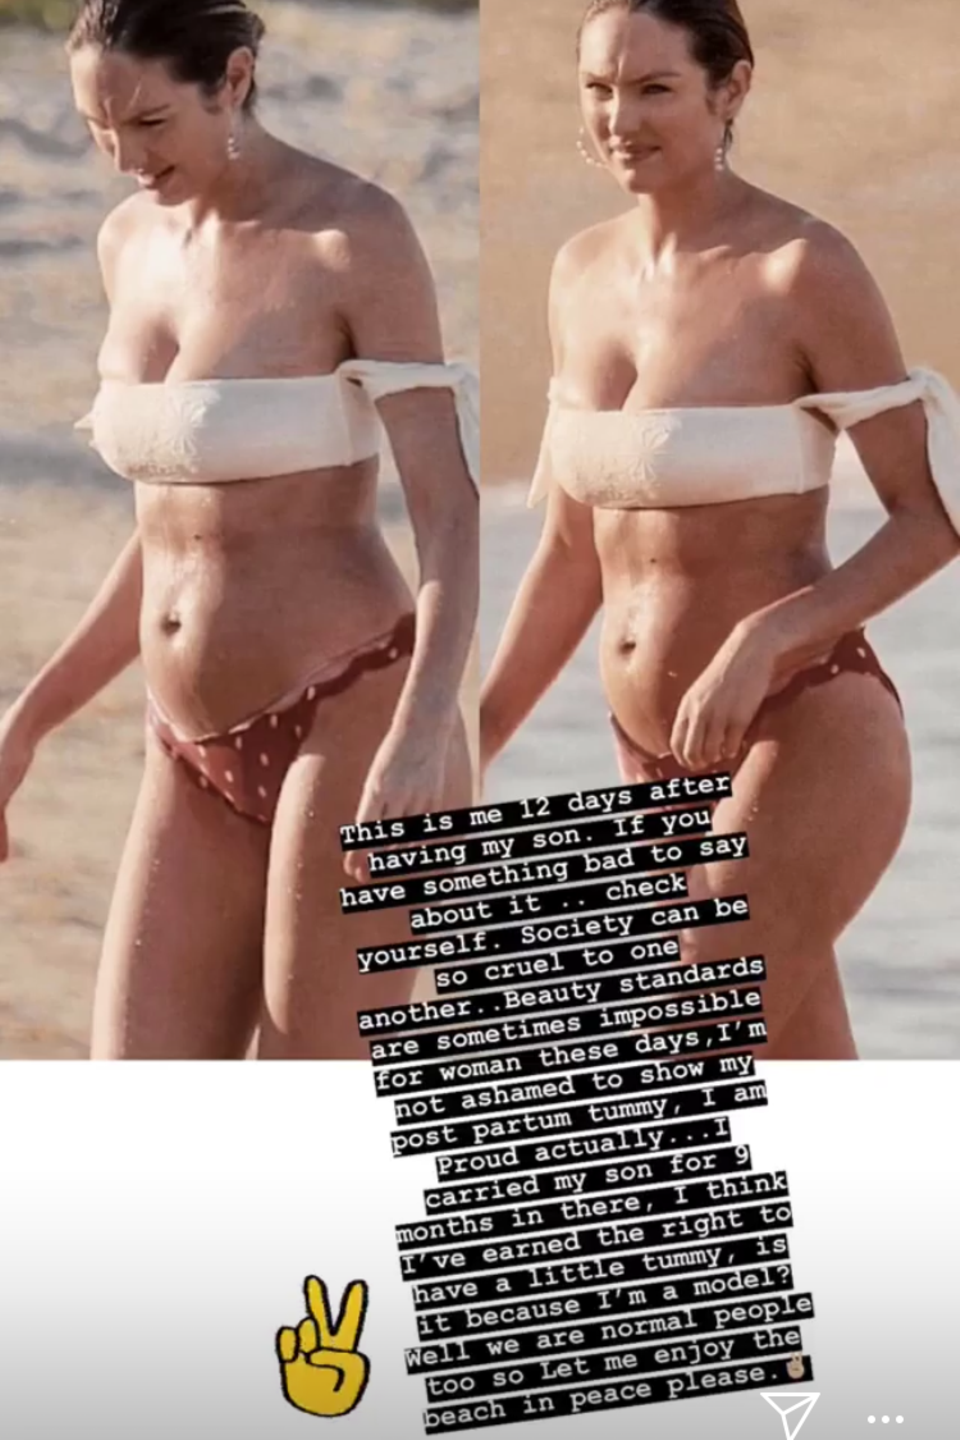 In ihrer Instagram-Story postet Candice Swanepoel am 11. Juli ein klares Statement und Bikini-Fotos von sich. "Ich habe das Recht dazu, einen kleinen Bauch zu haben", schreibt sie und beschwert sich über heutige Schönheitsideale.